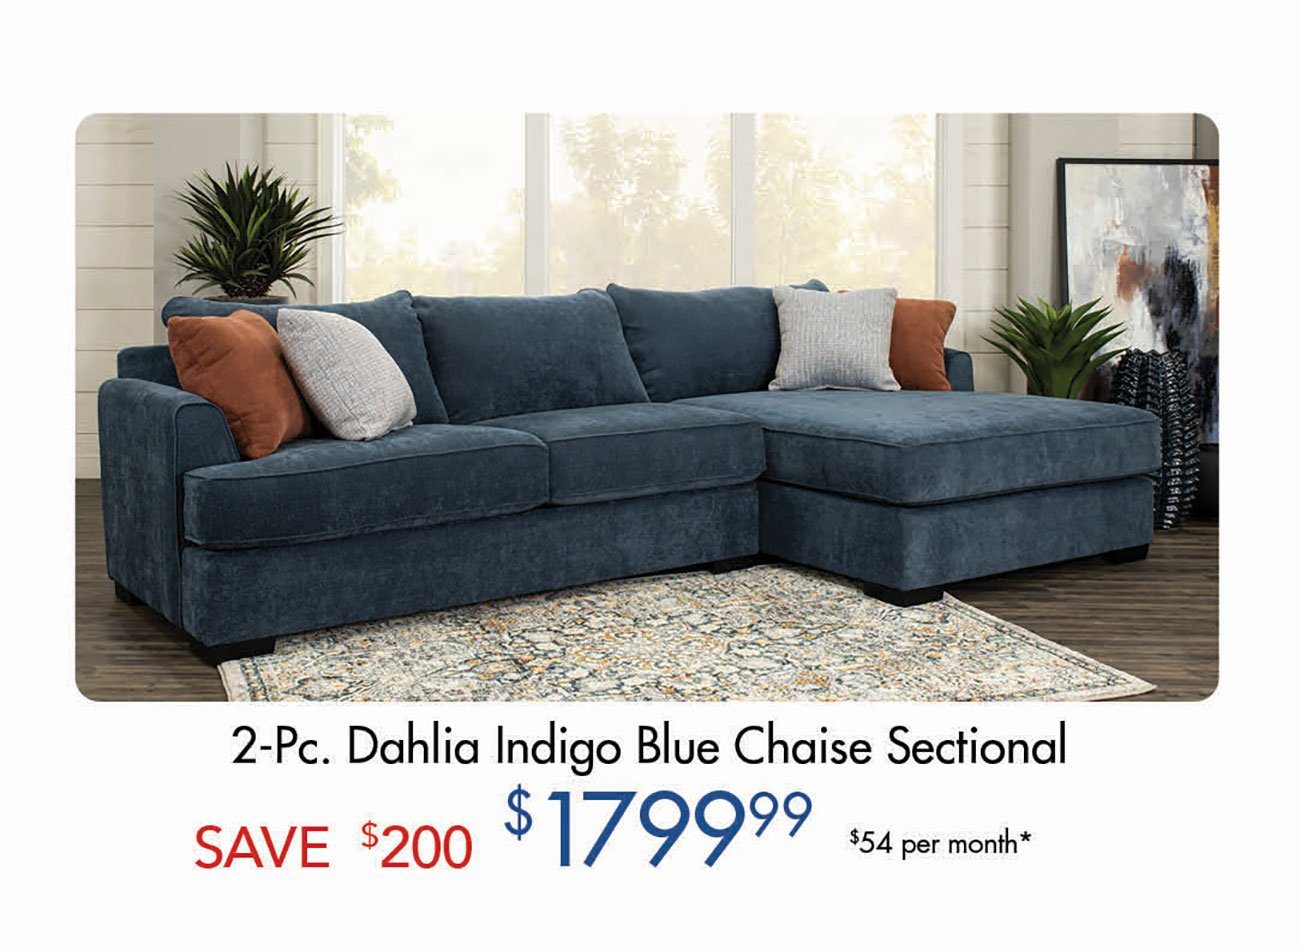 Dahlia-Indigo-Blue-Chaise-Sectional